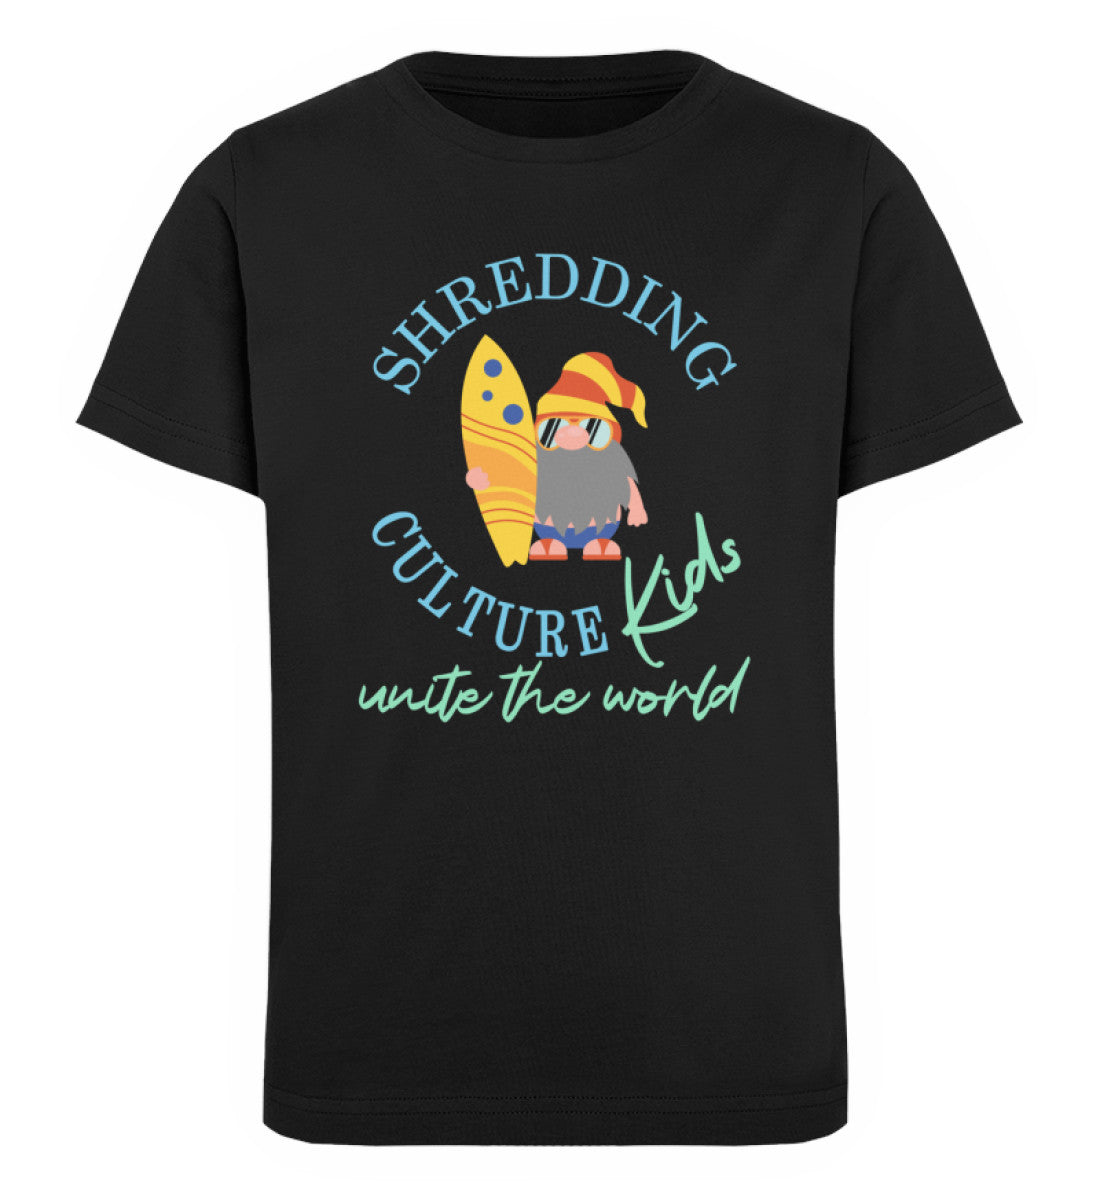 Schwarzes Kinder T-Shirt für Mädchen und Jungen bedruckt mit dem Design der Roger Rockawoo Kollektion shredding culture kids surfing